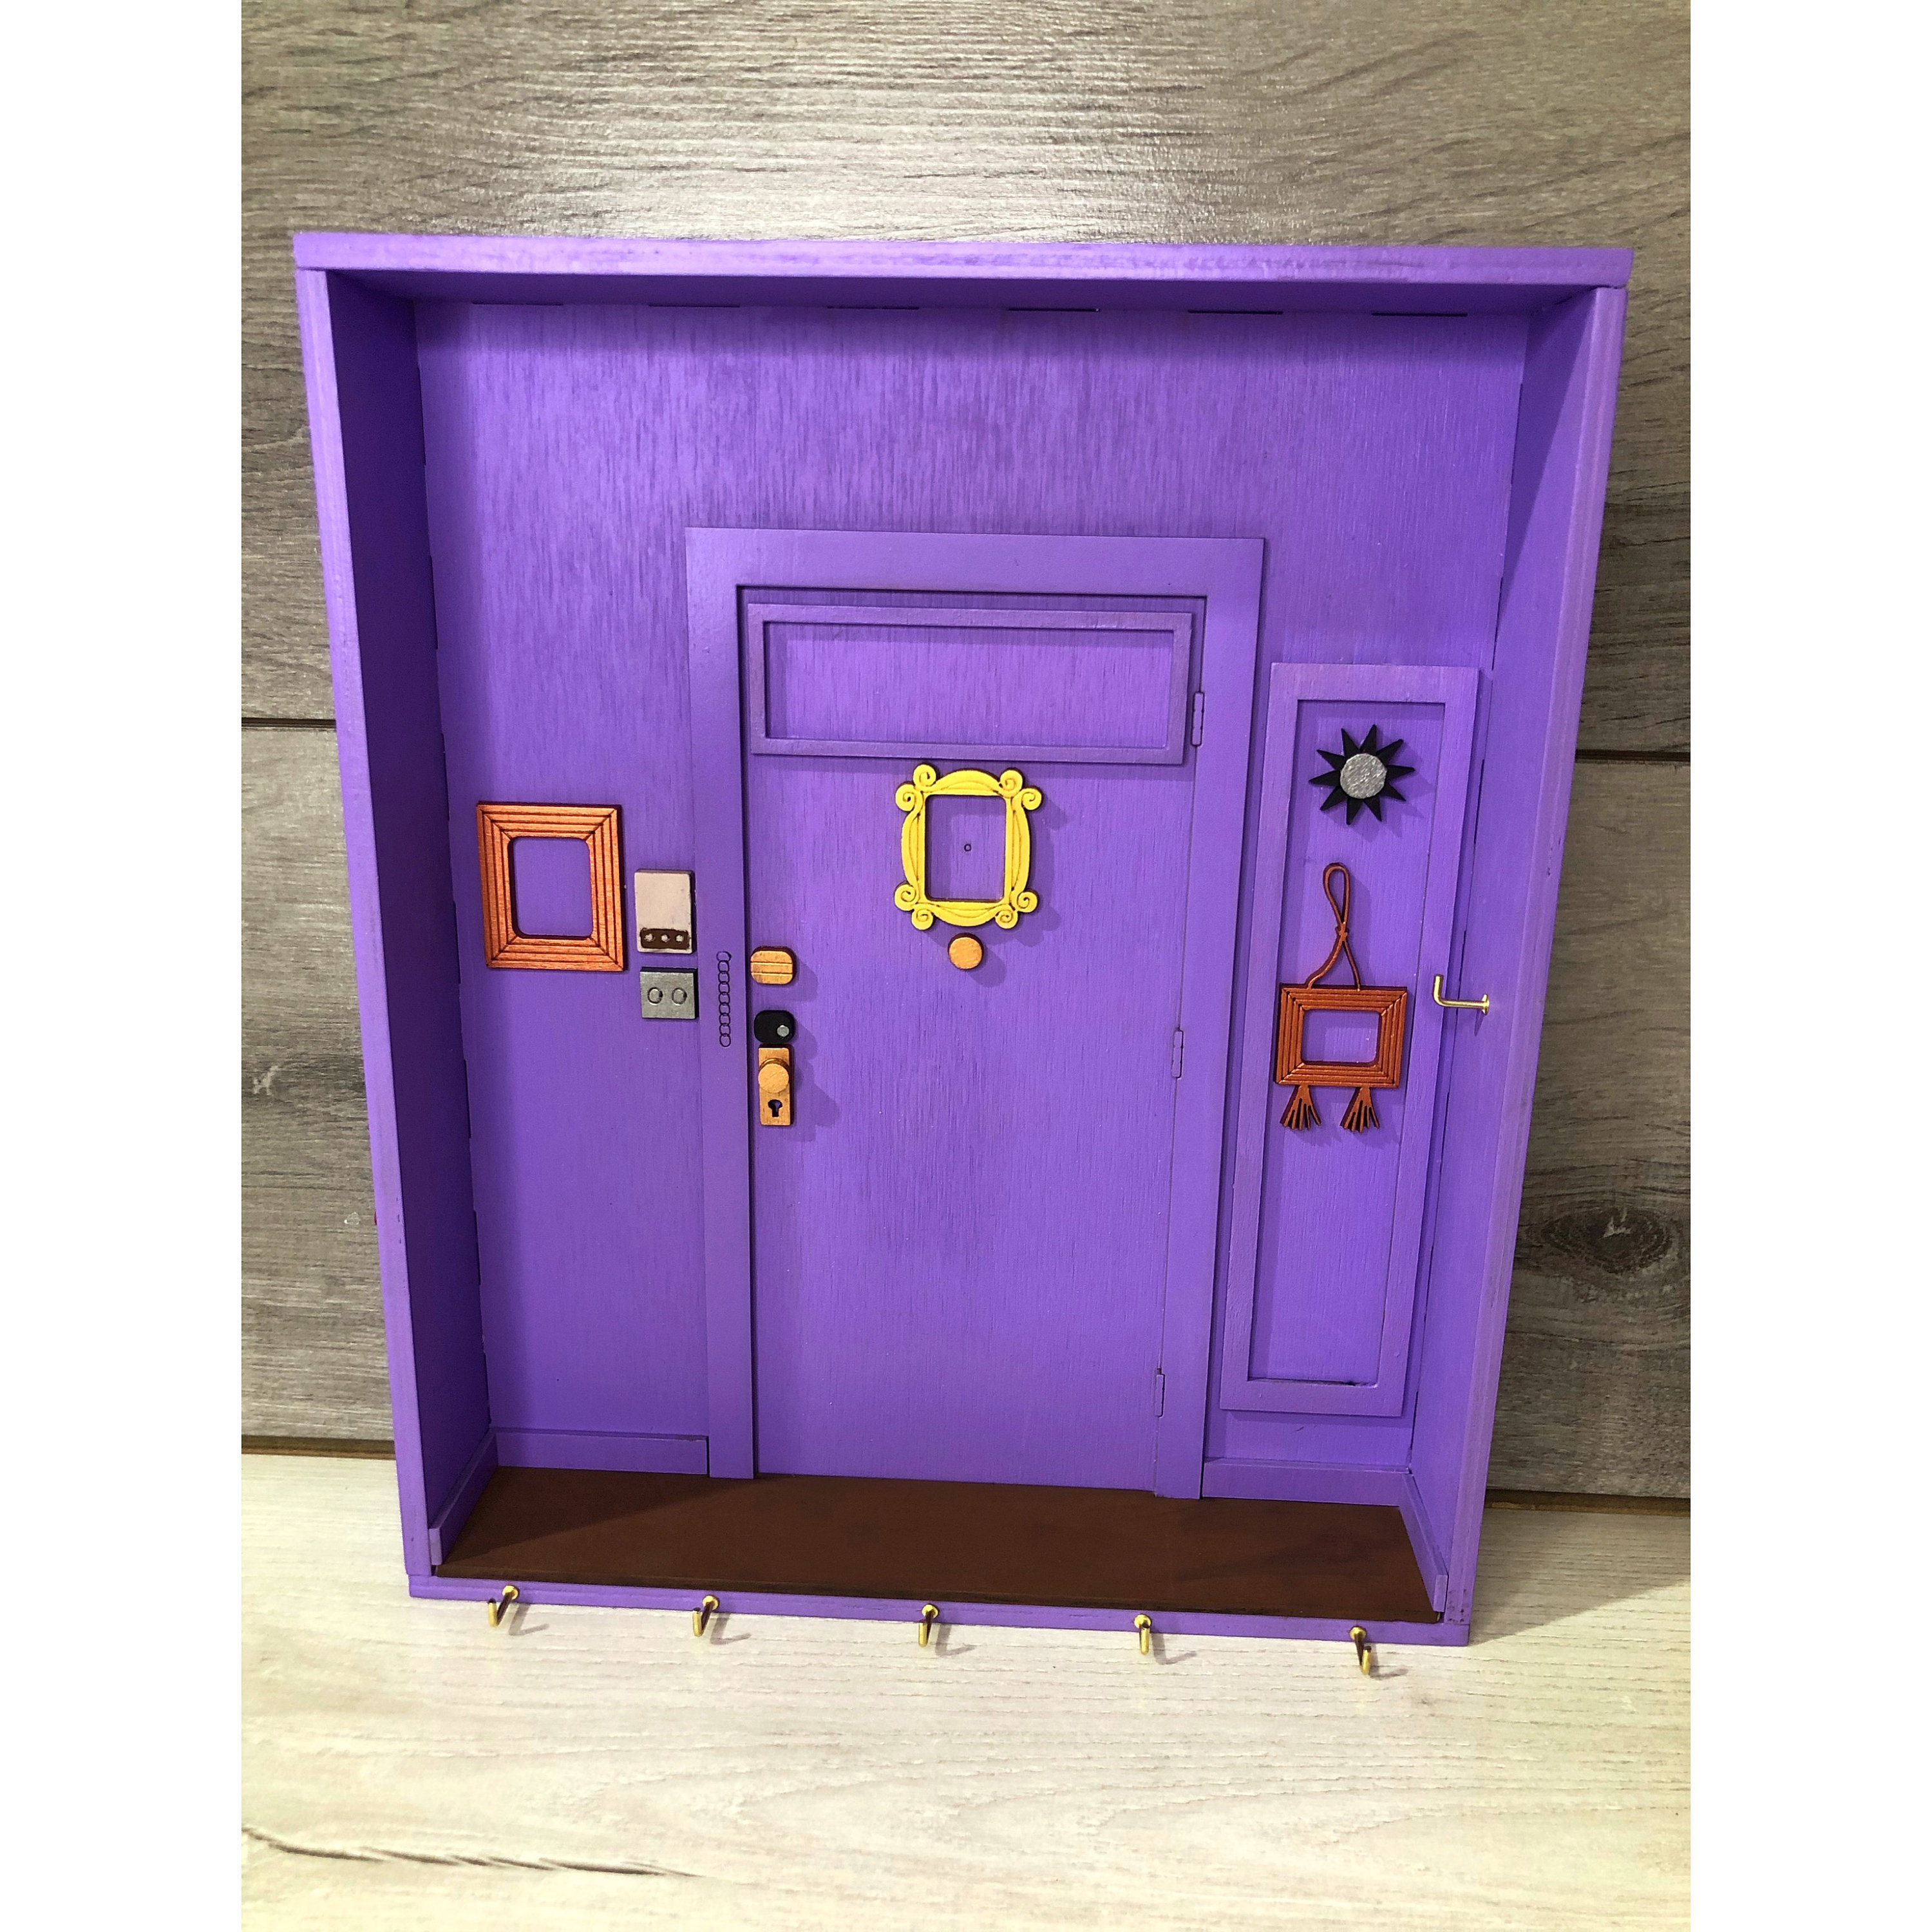 🔑 Colgador/soporte de llaves de la serie Friends 😎 Este icónico llavero  hecho a mano inspirado en la puerta de apartamento favorita de…